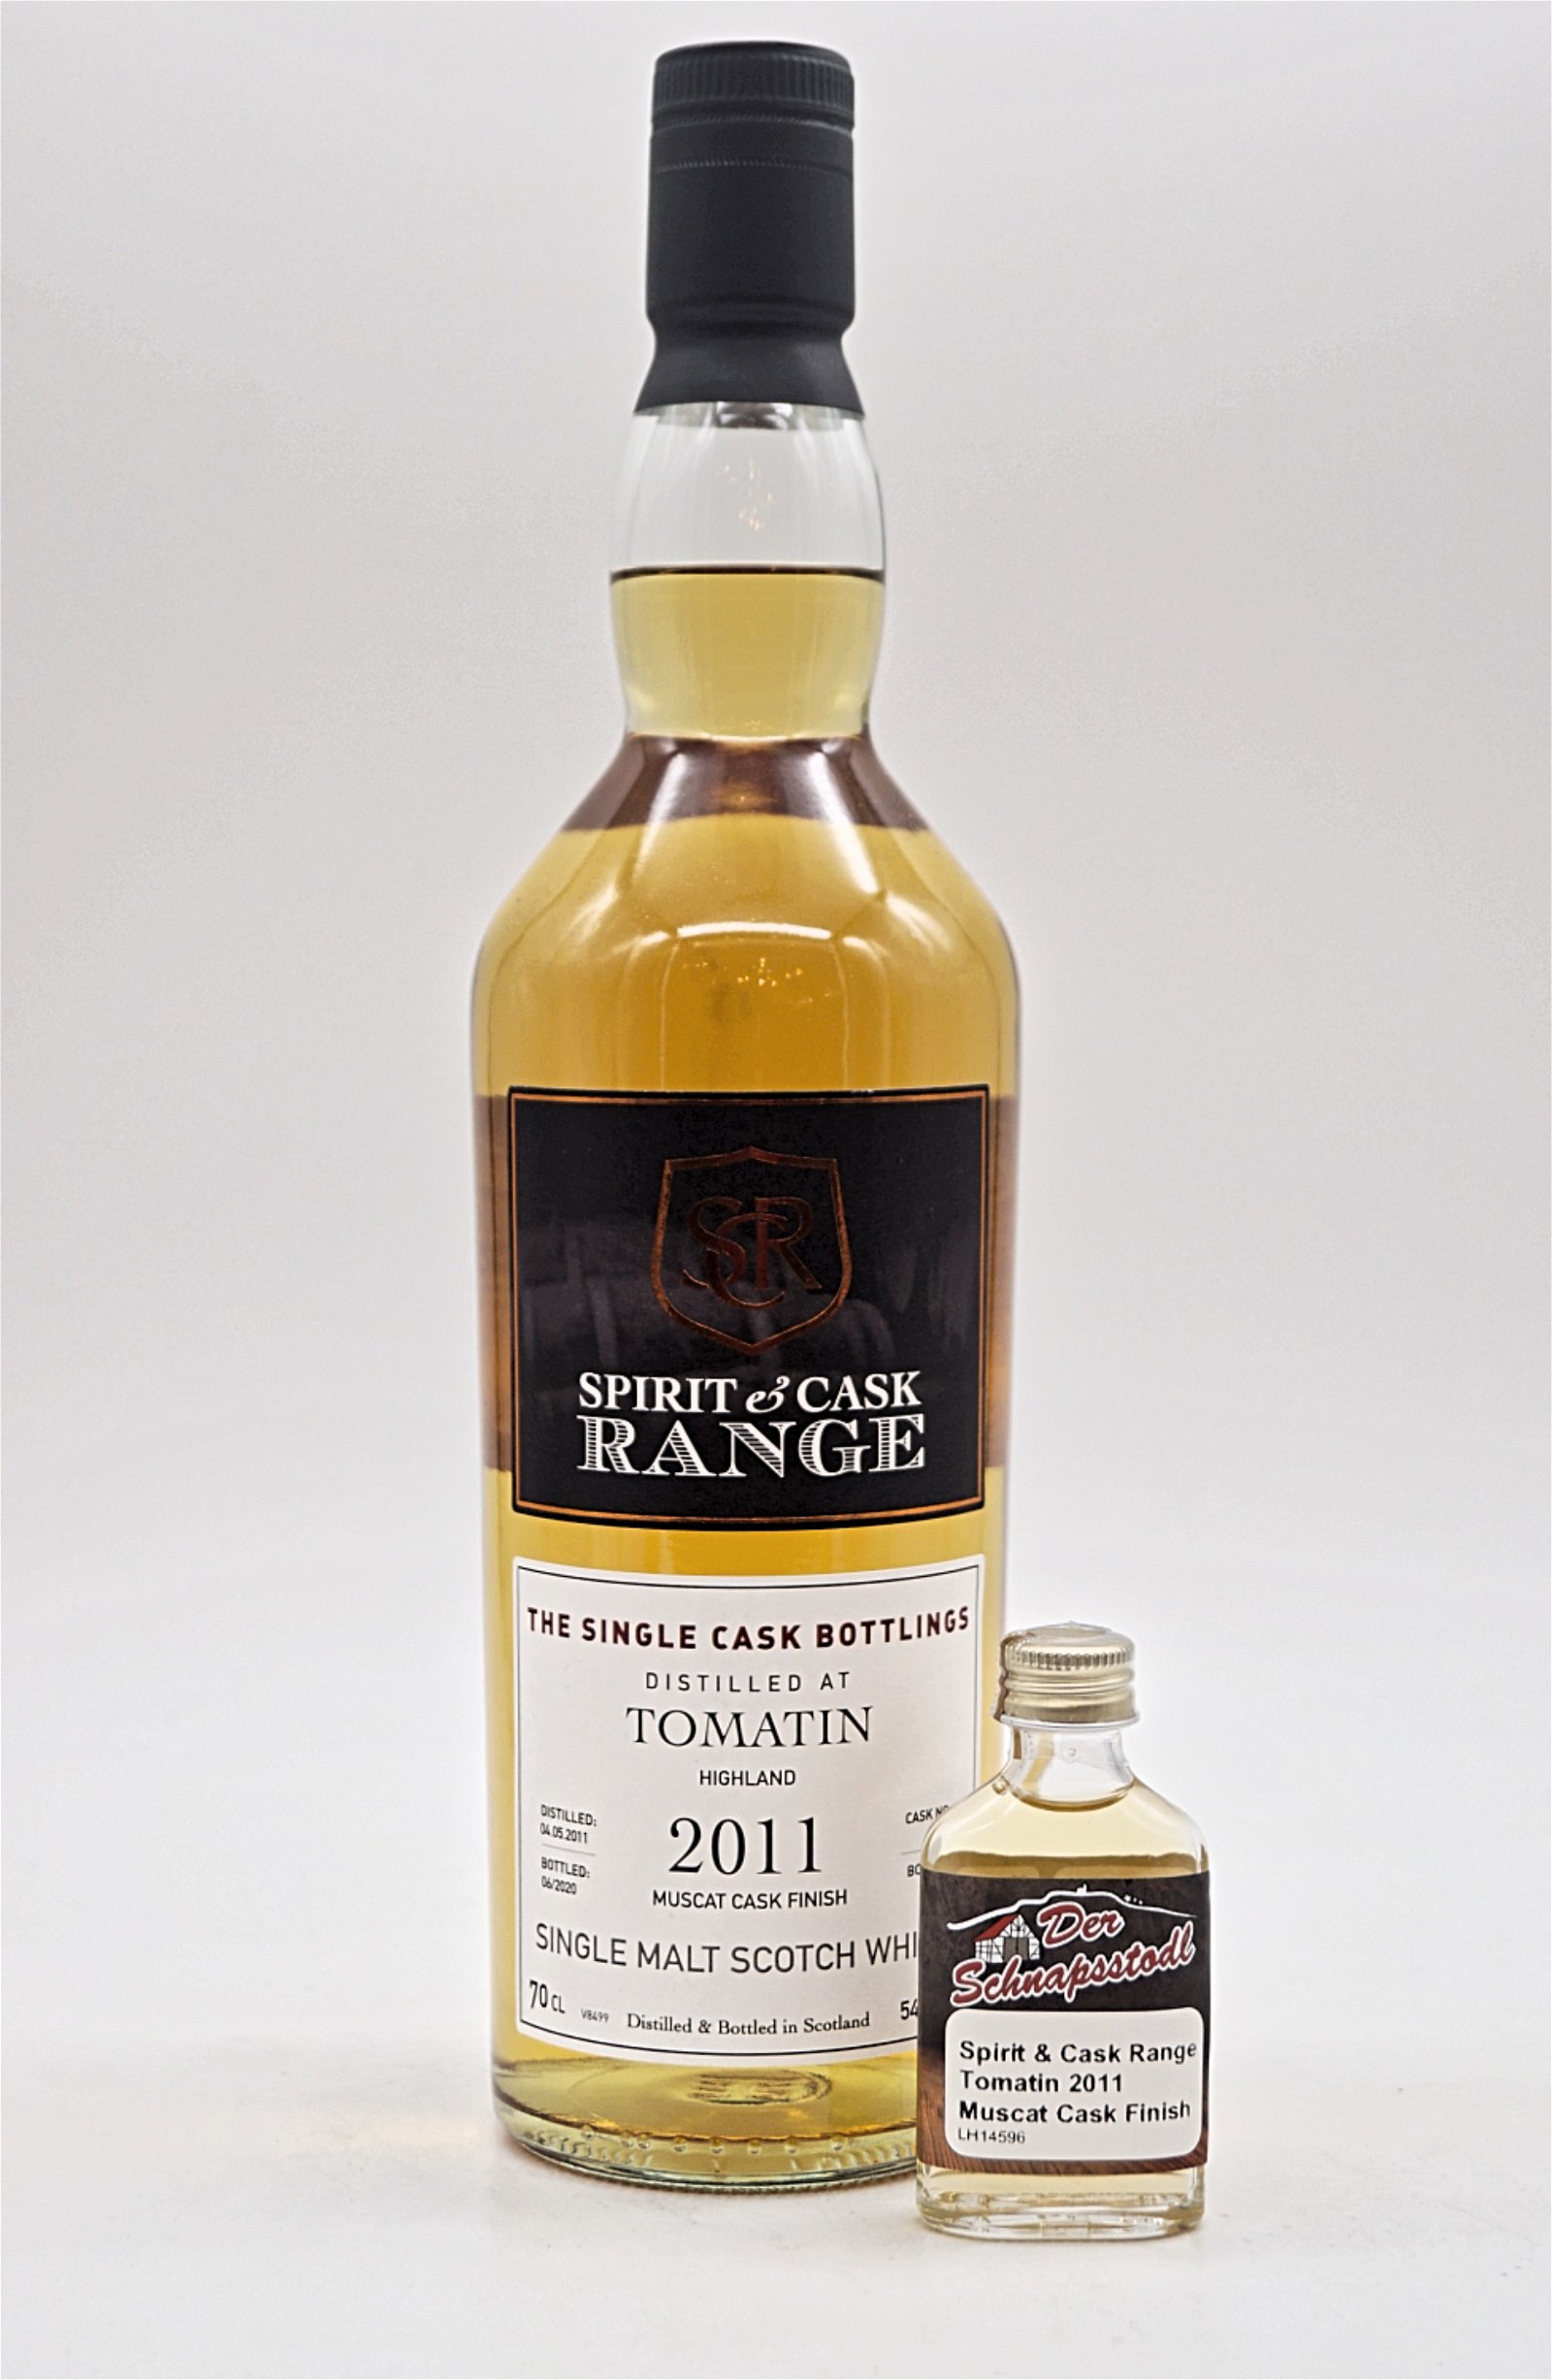 Spirit & Cask Range Tomatin 2011 Muscat Cask Finish Single Malt Scotch Whisky Sample 20 ml